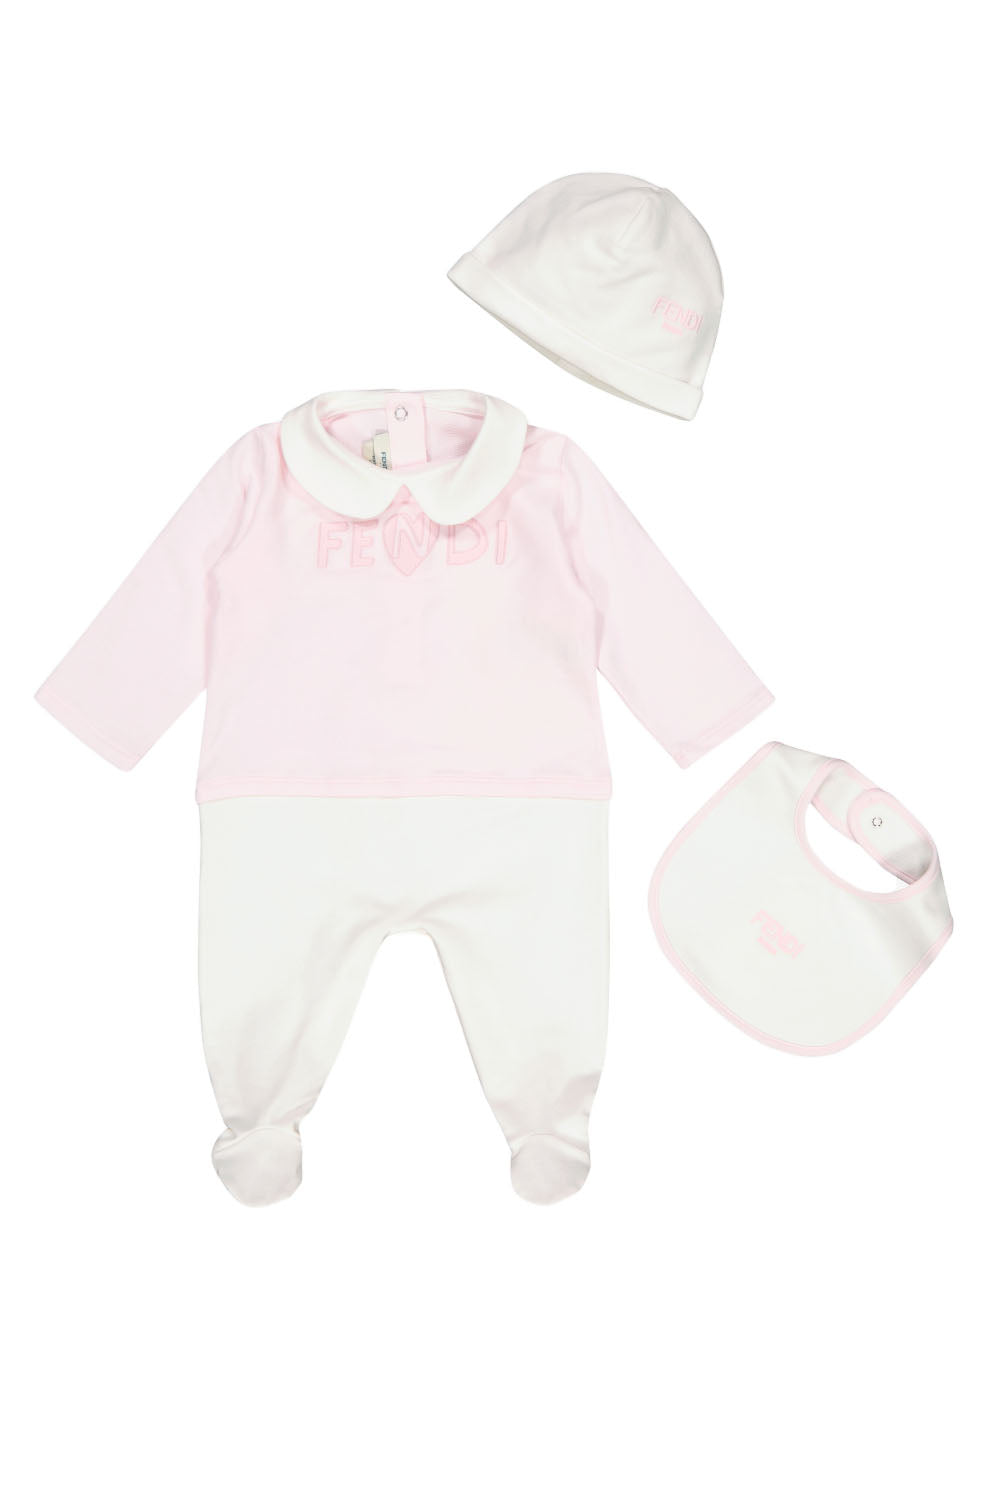 Baby Fendi Gift Set for Girls Baby Fendi Gift Set for Girls Maison7